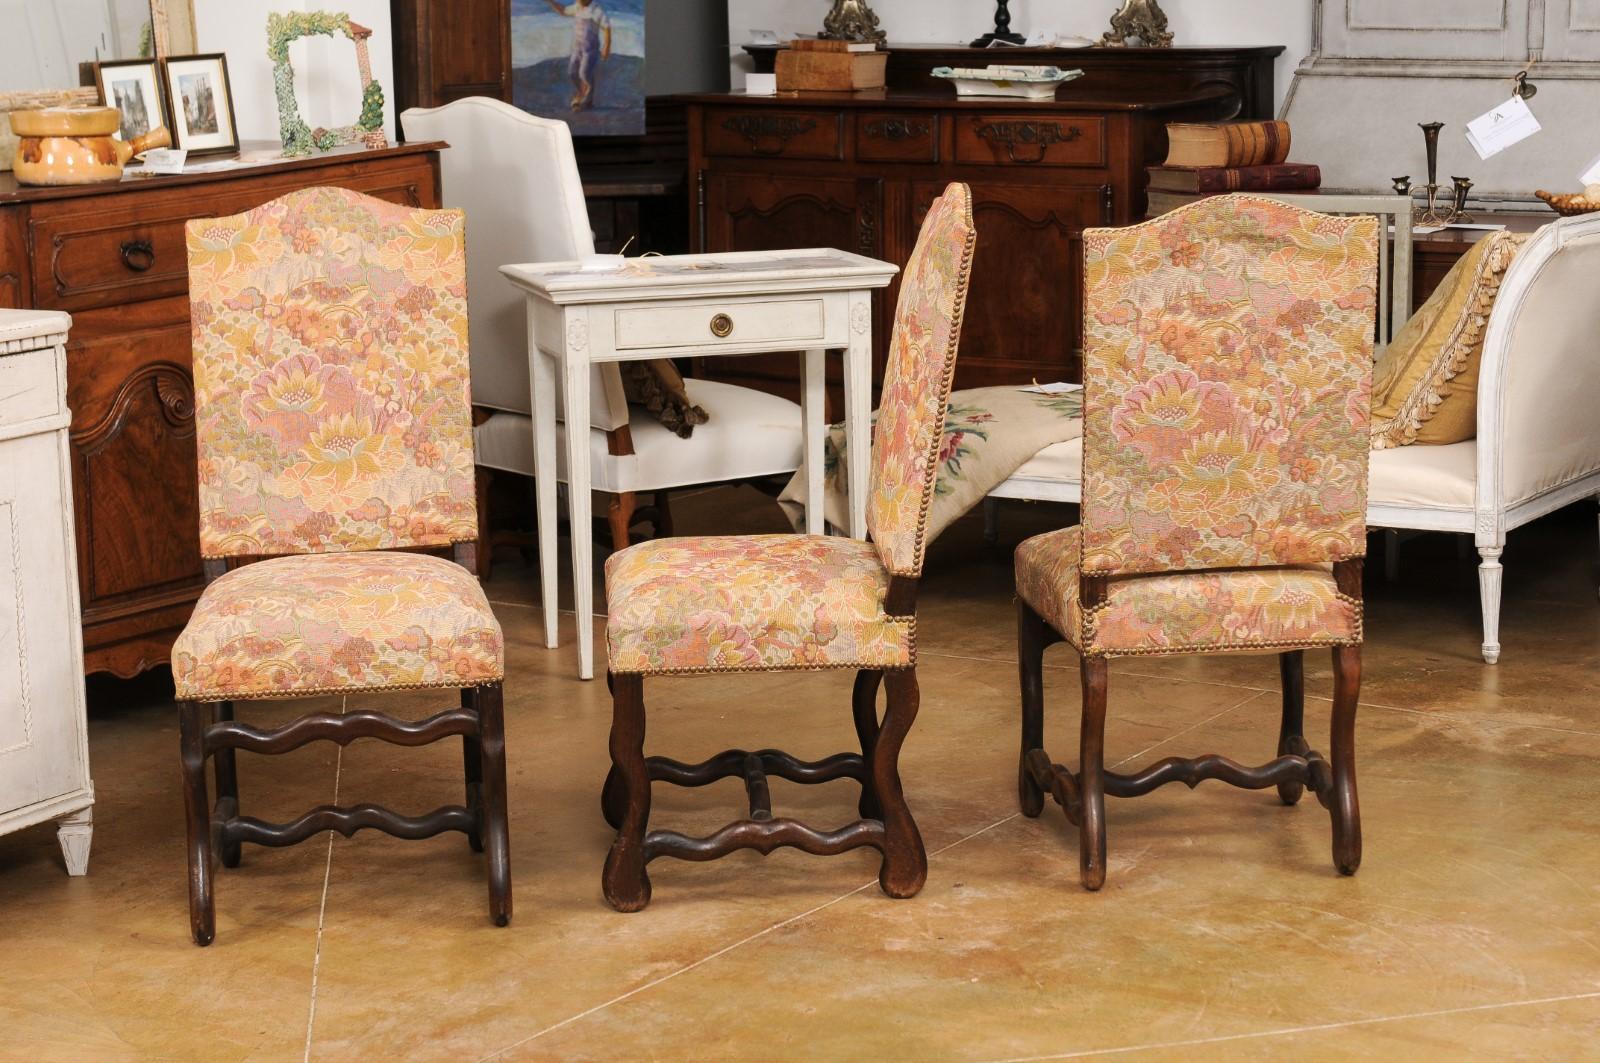 Un ensemble de six chaises de salle à manger de style Louis XIII du 19ème siècle, avec des bases en os de mouton, des dossiers inclinés, des traverses et des tapisseries florales usagées. Créé en France au XIXe siècle, cet ensemble de chaises